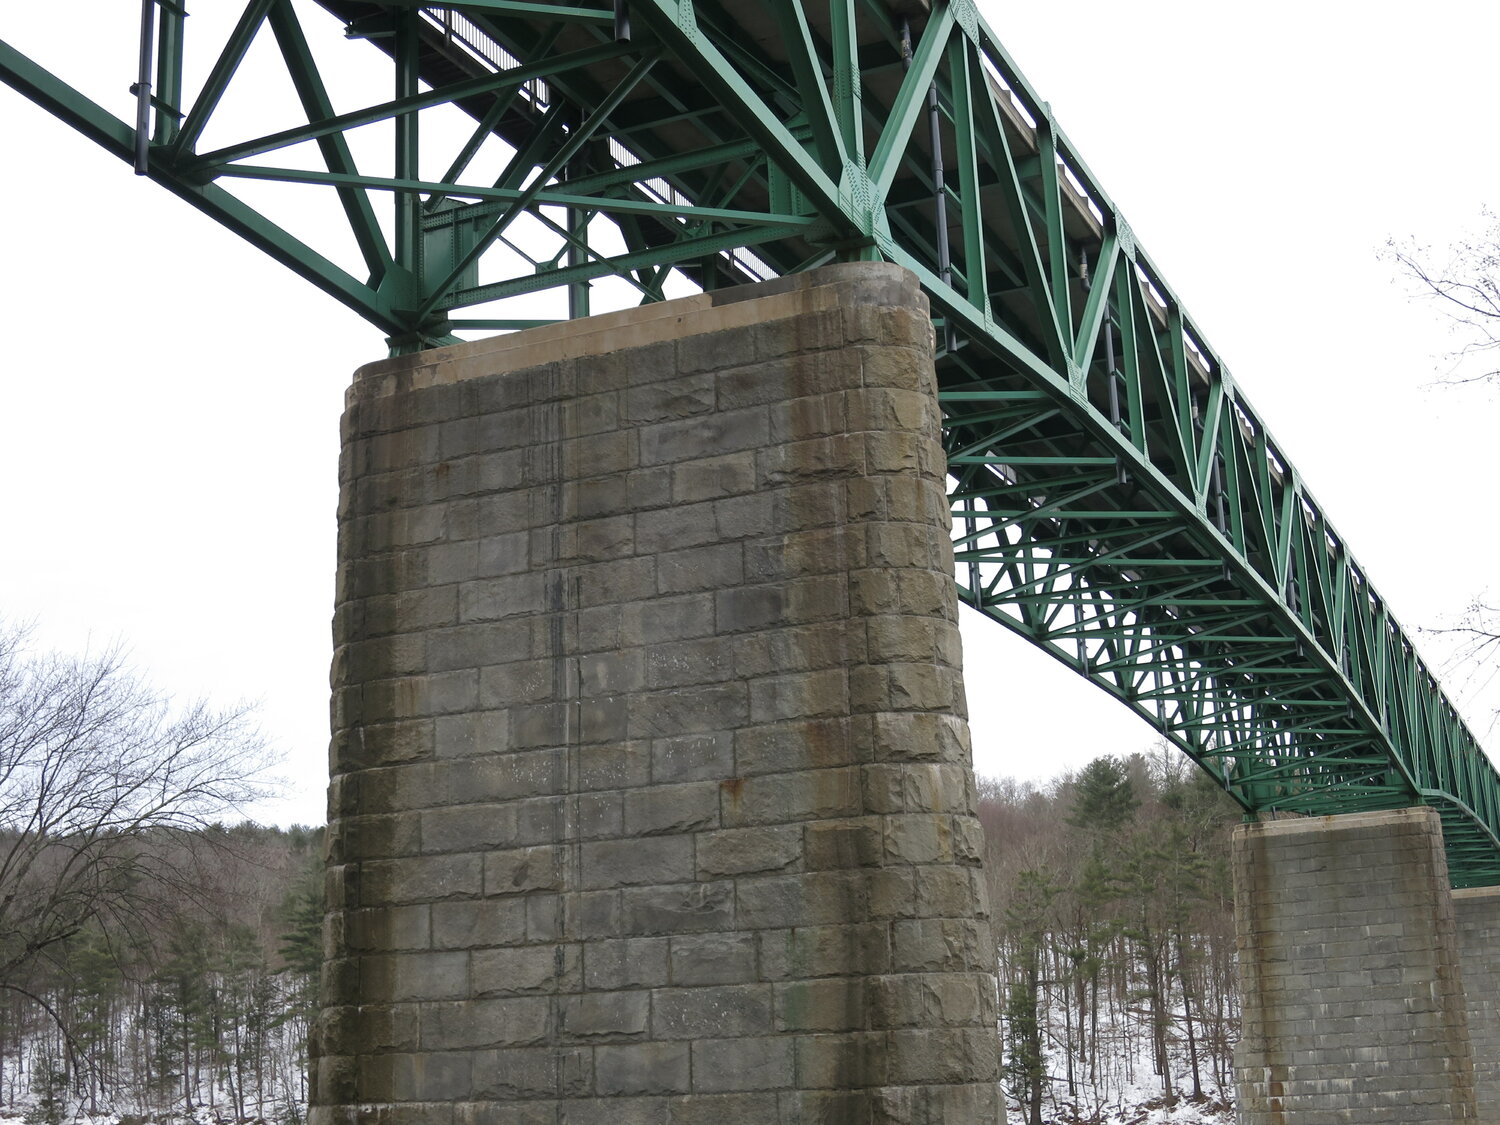 The Milford-Montague Bridge